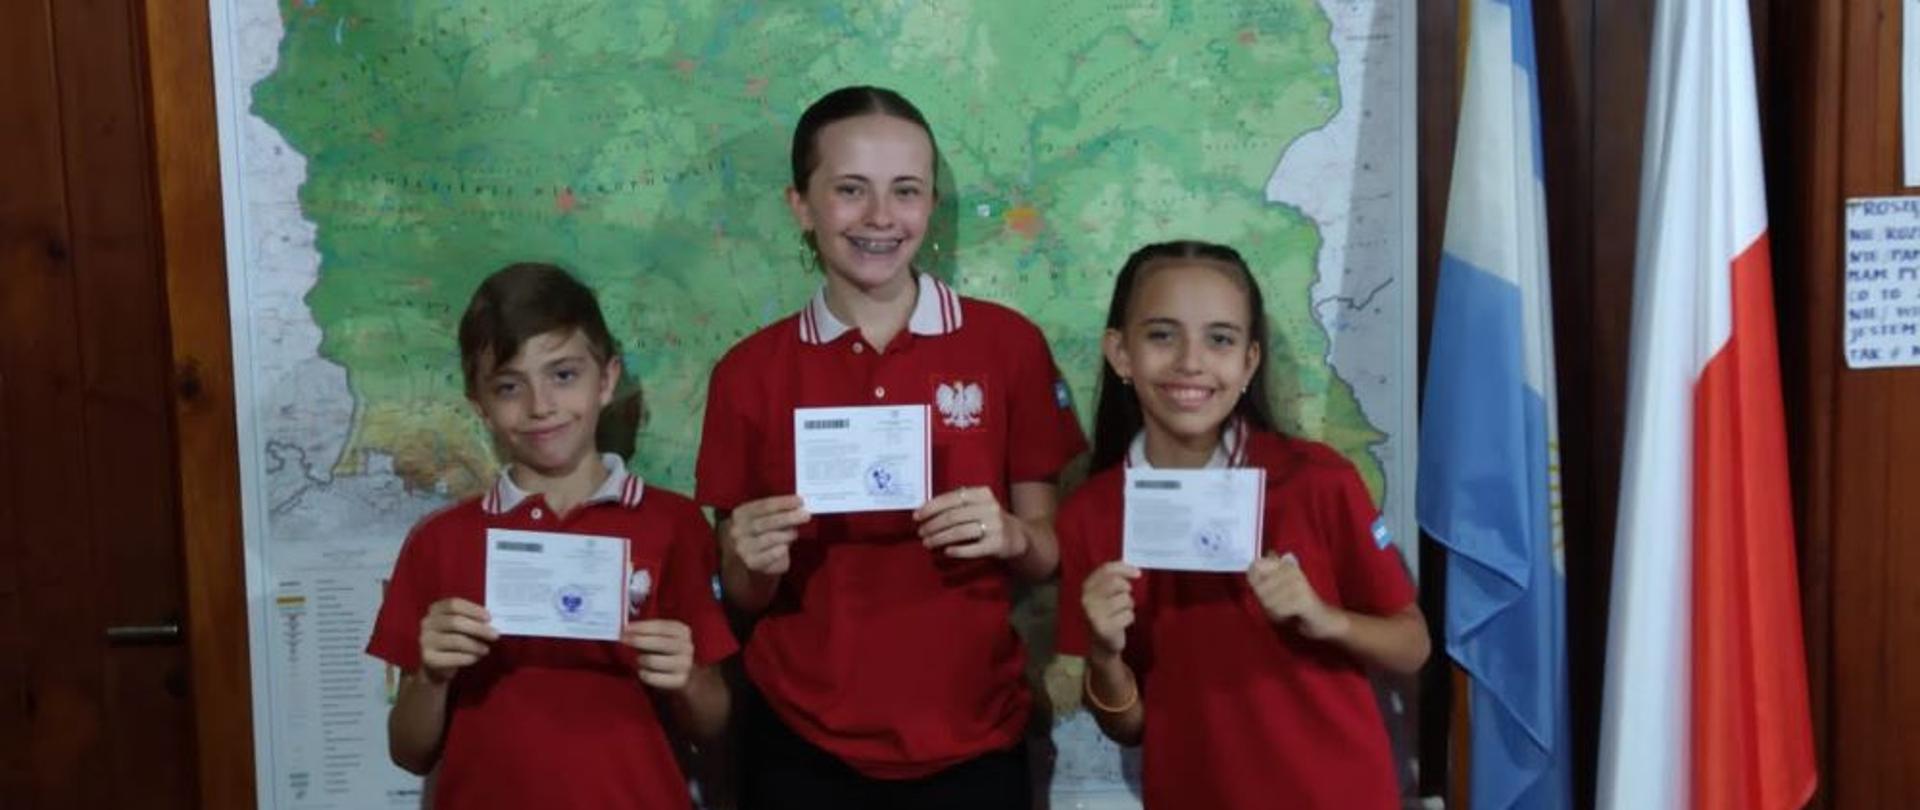 Troje uczniów z prowincji Misiones, Ignacio Agustin, Ludmila Juana i Camila Mariana, otrzymały polskie legitymacje szkolne, wydane przez Monikę Perendyk, Konsula RP w Argentynie. 